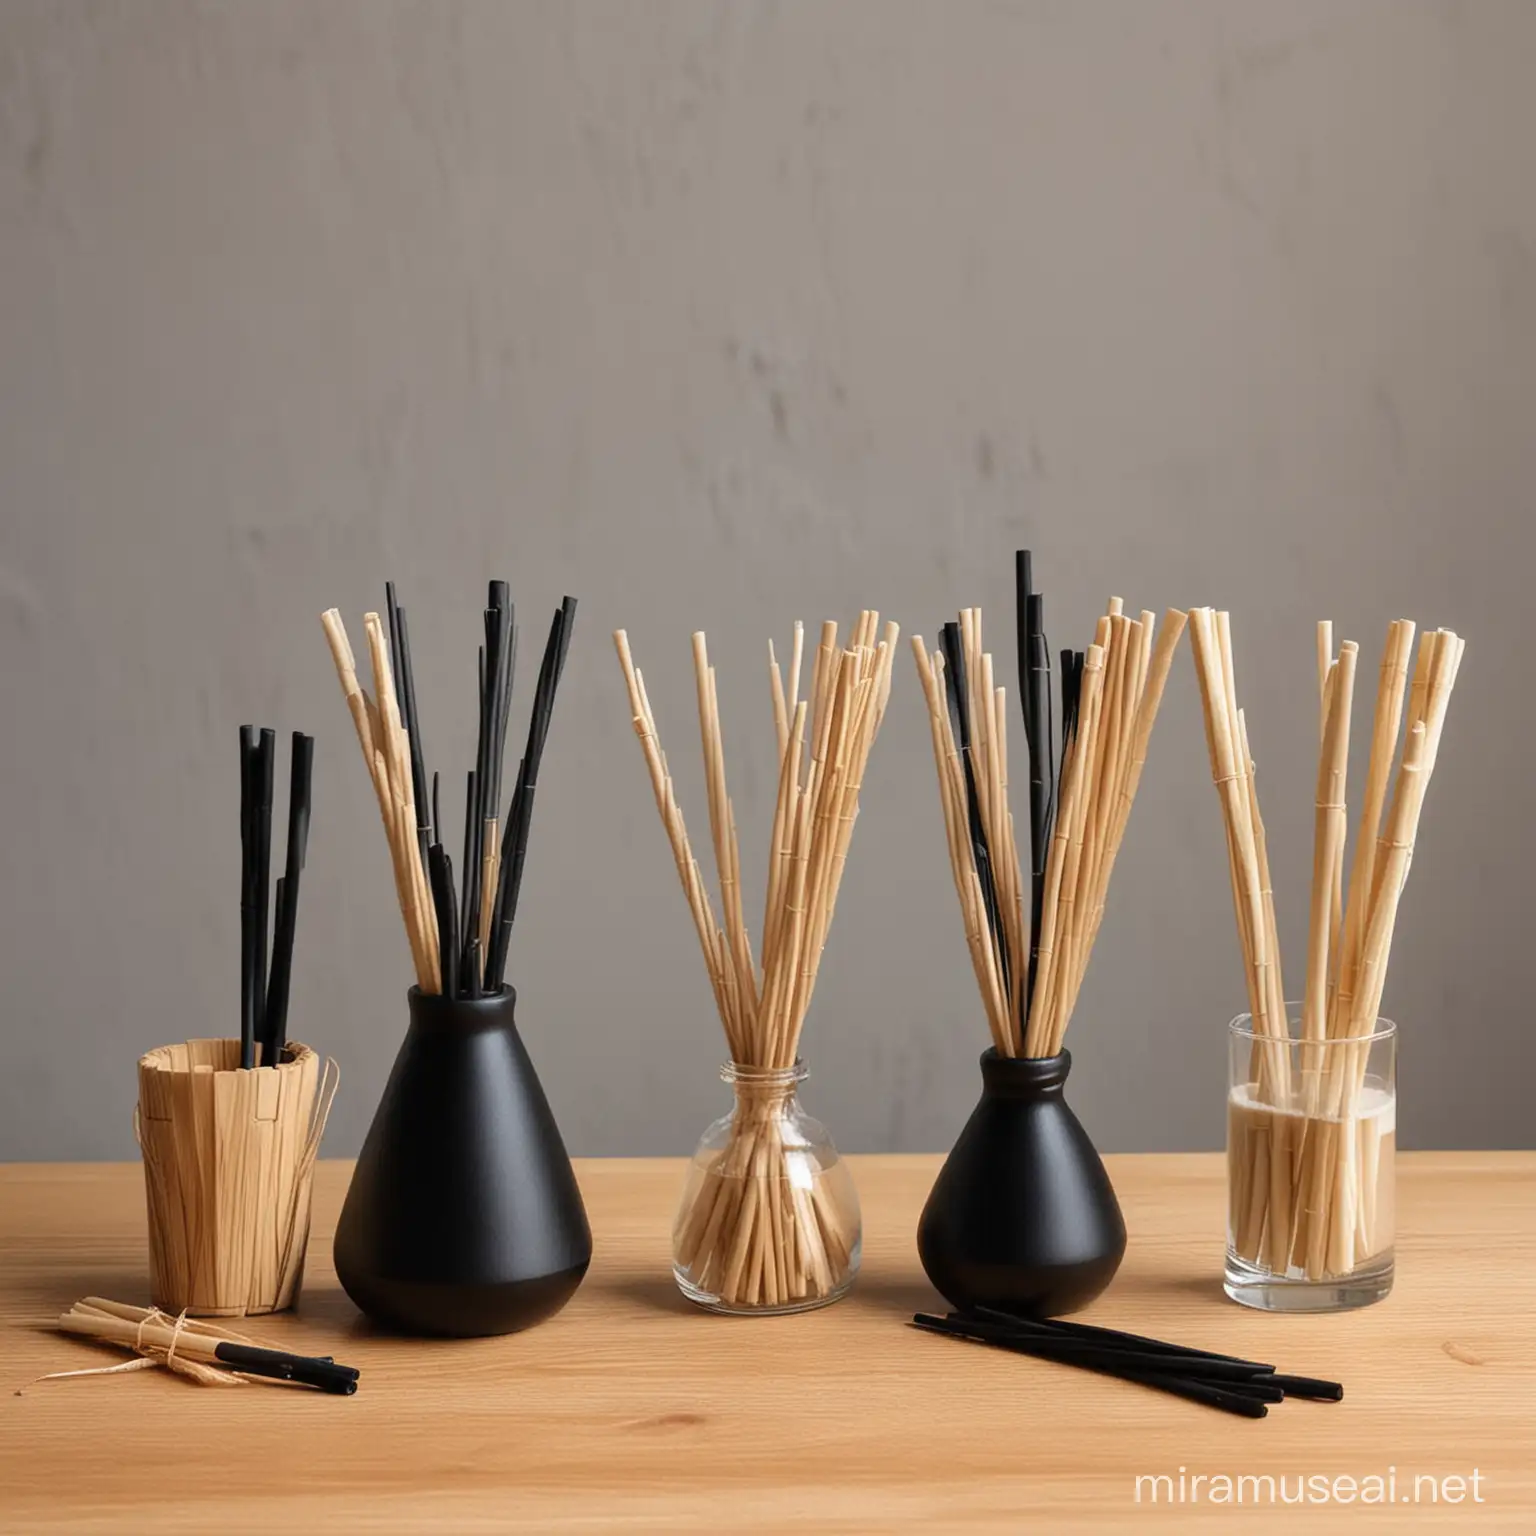 Aroma Diffuser Sticks Comparison Wooden Bamboo and Fiber Sticks